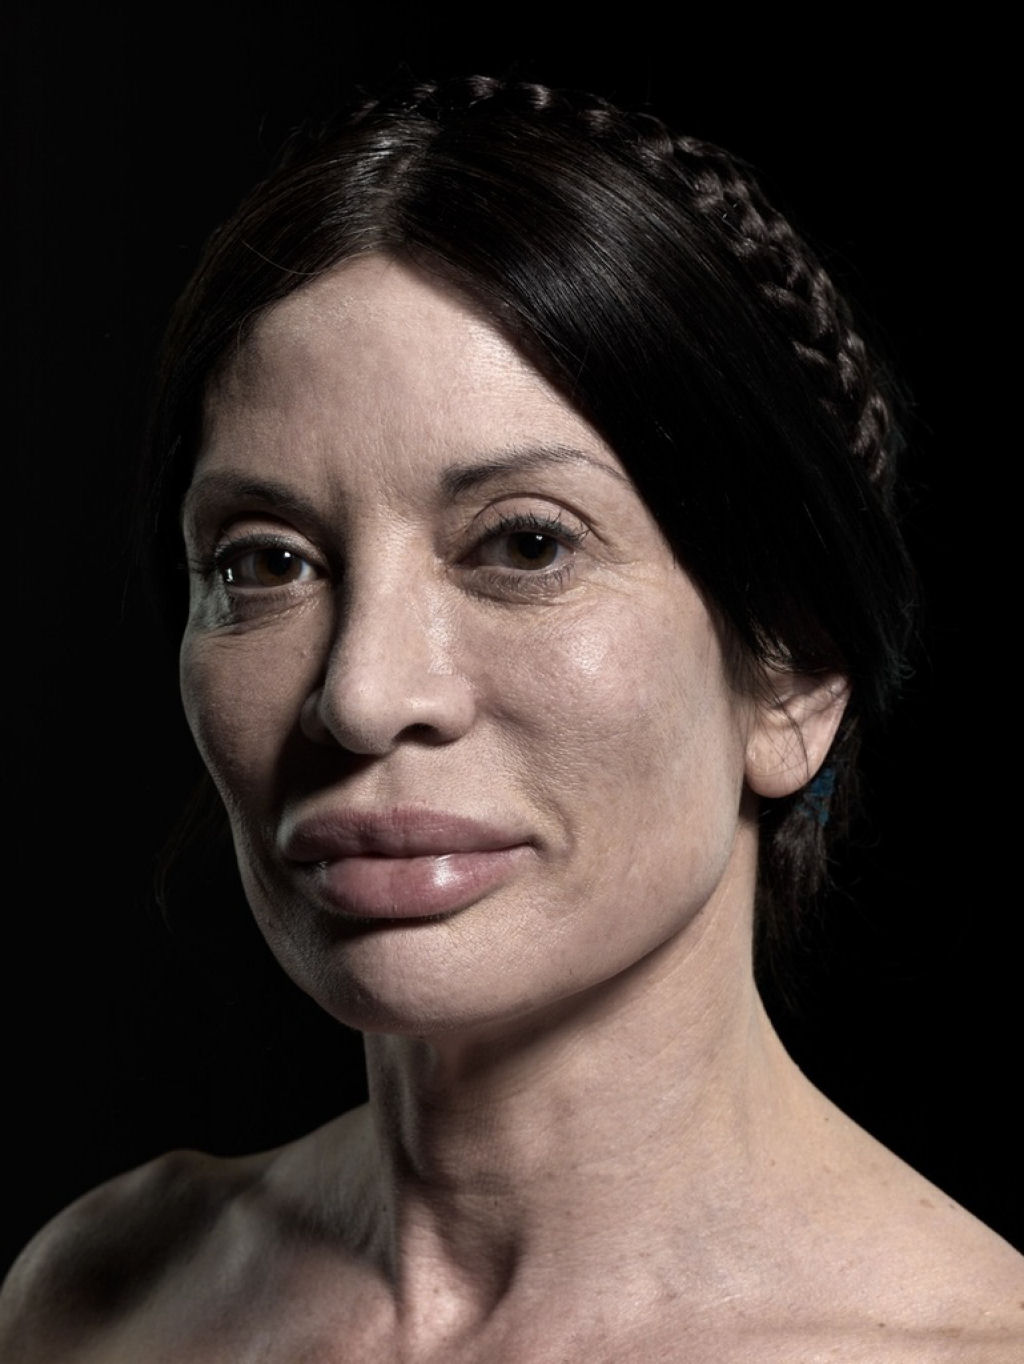 Plstica beleza: retratos de pessoas com cirurgia esttica extrema 03